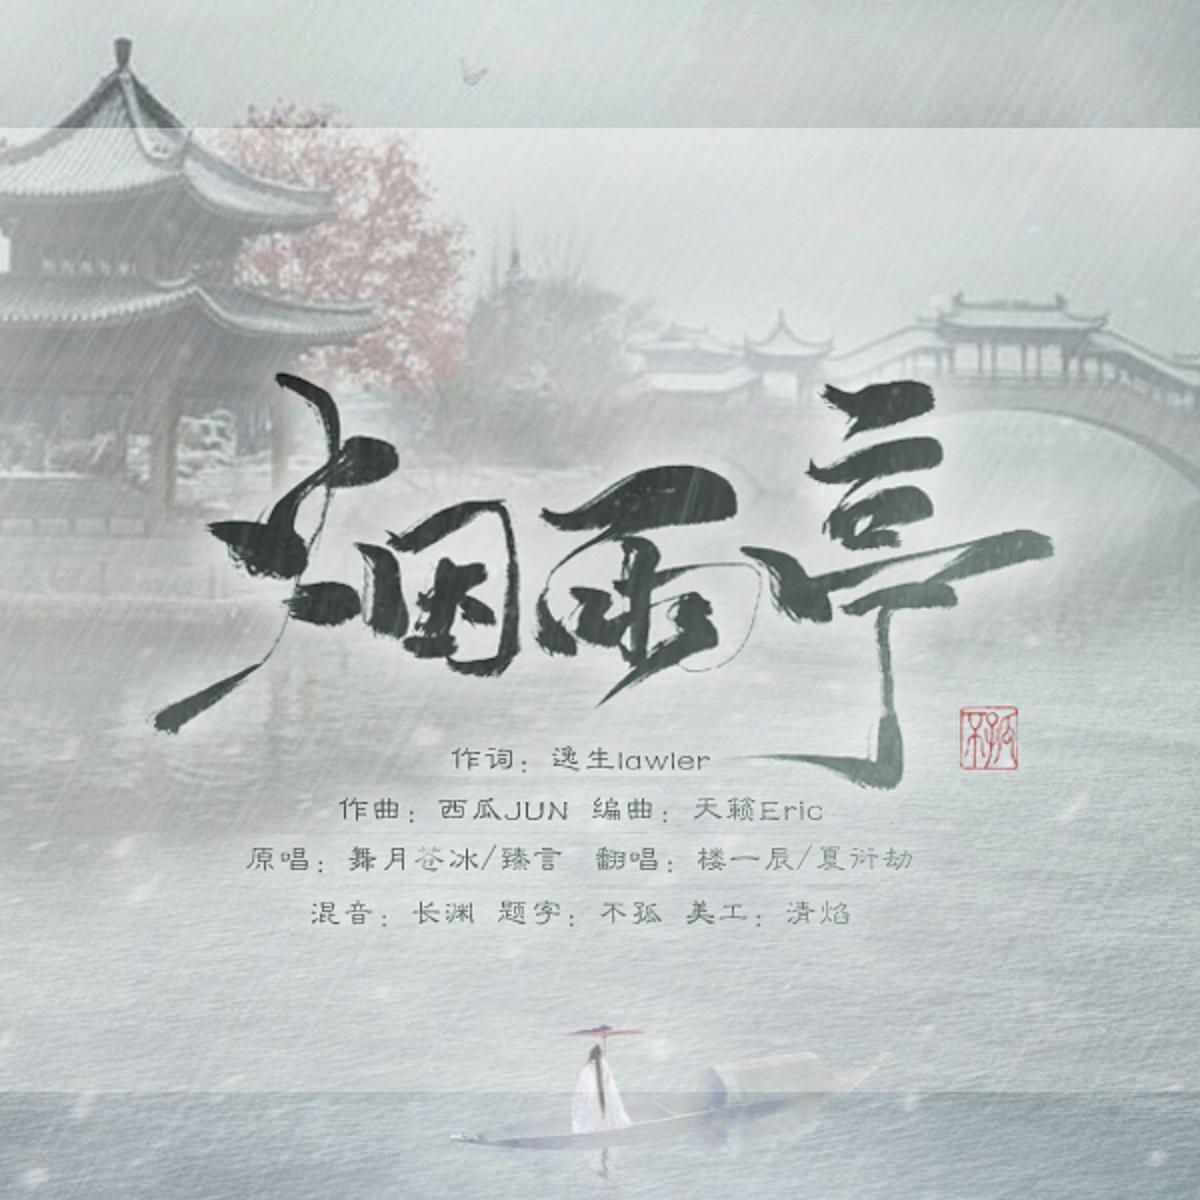 yan yu ting Cover: wu yue cang bing zhen yan